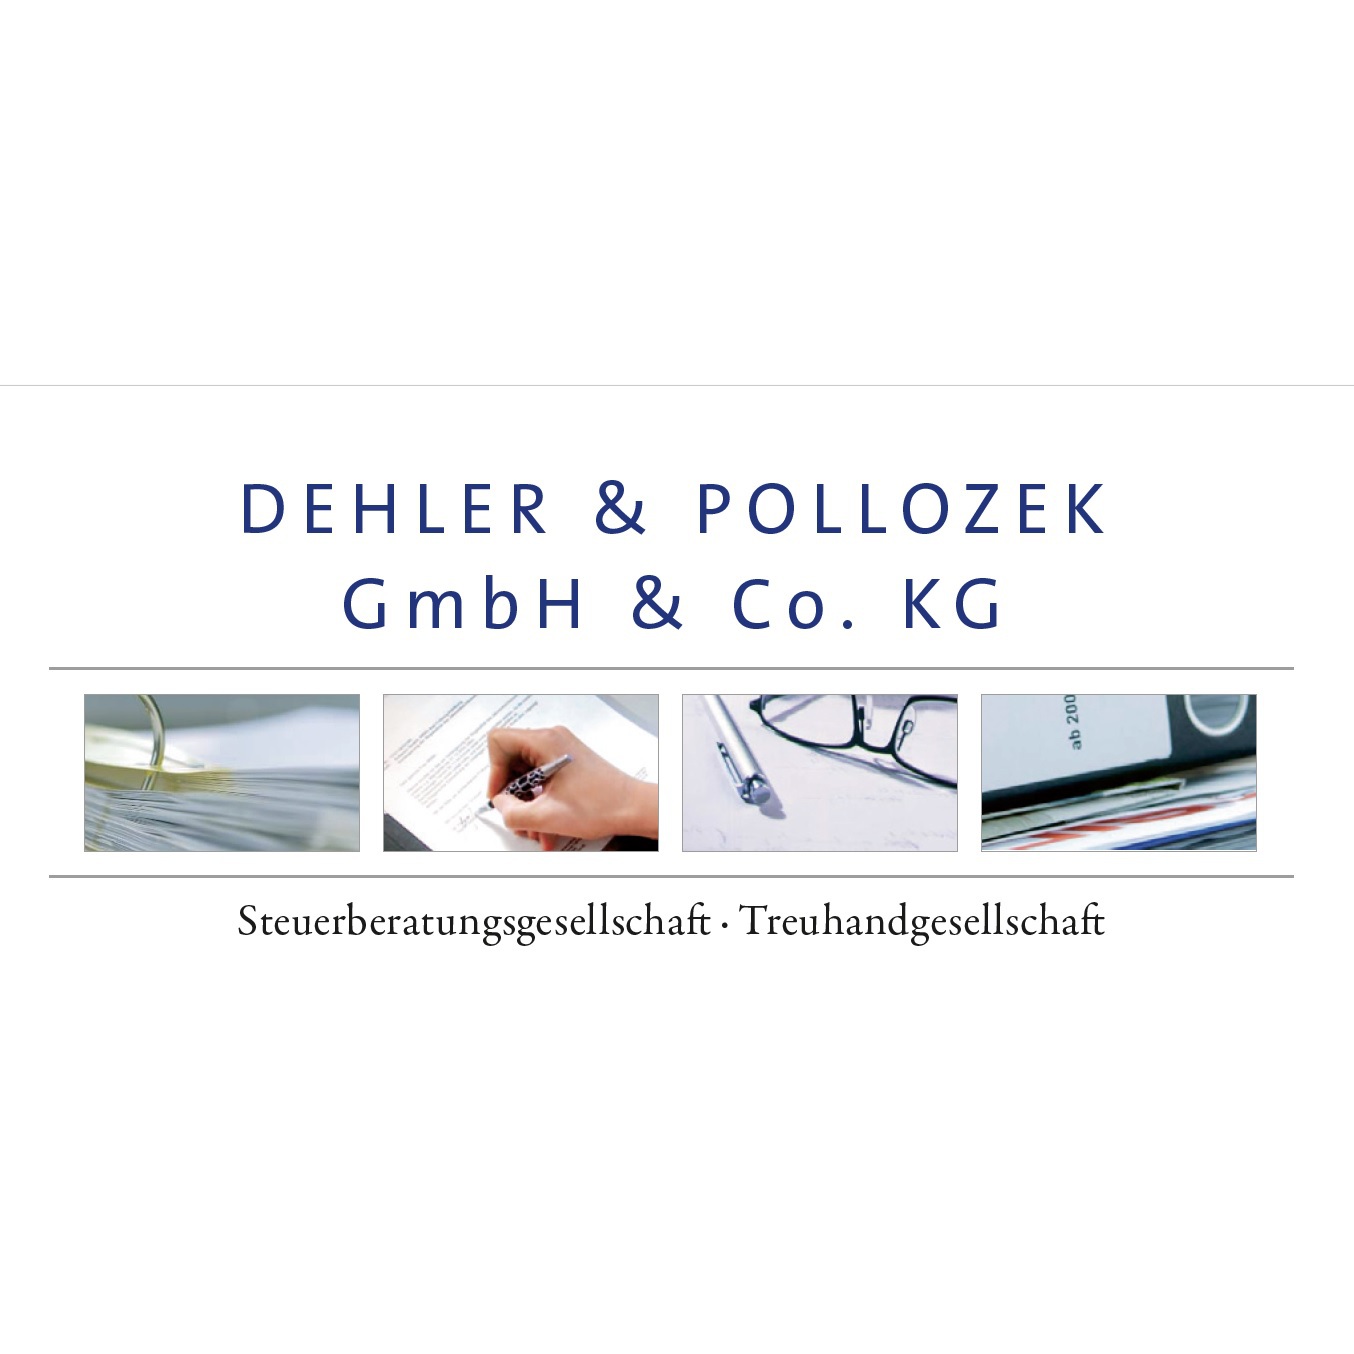 Dehler & Pollozek GmbH & Co. KG Steuerberatungsgesellschaft in Coburg - Logo